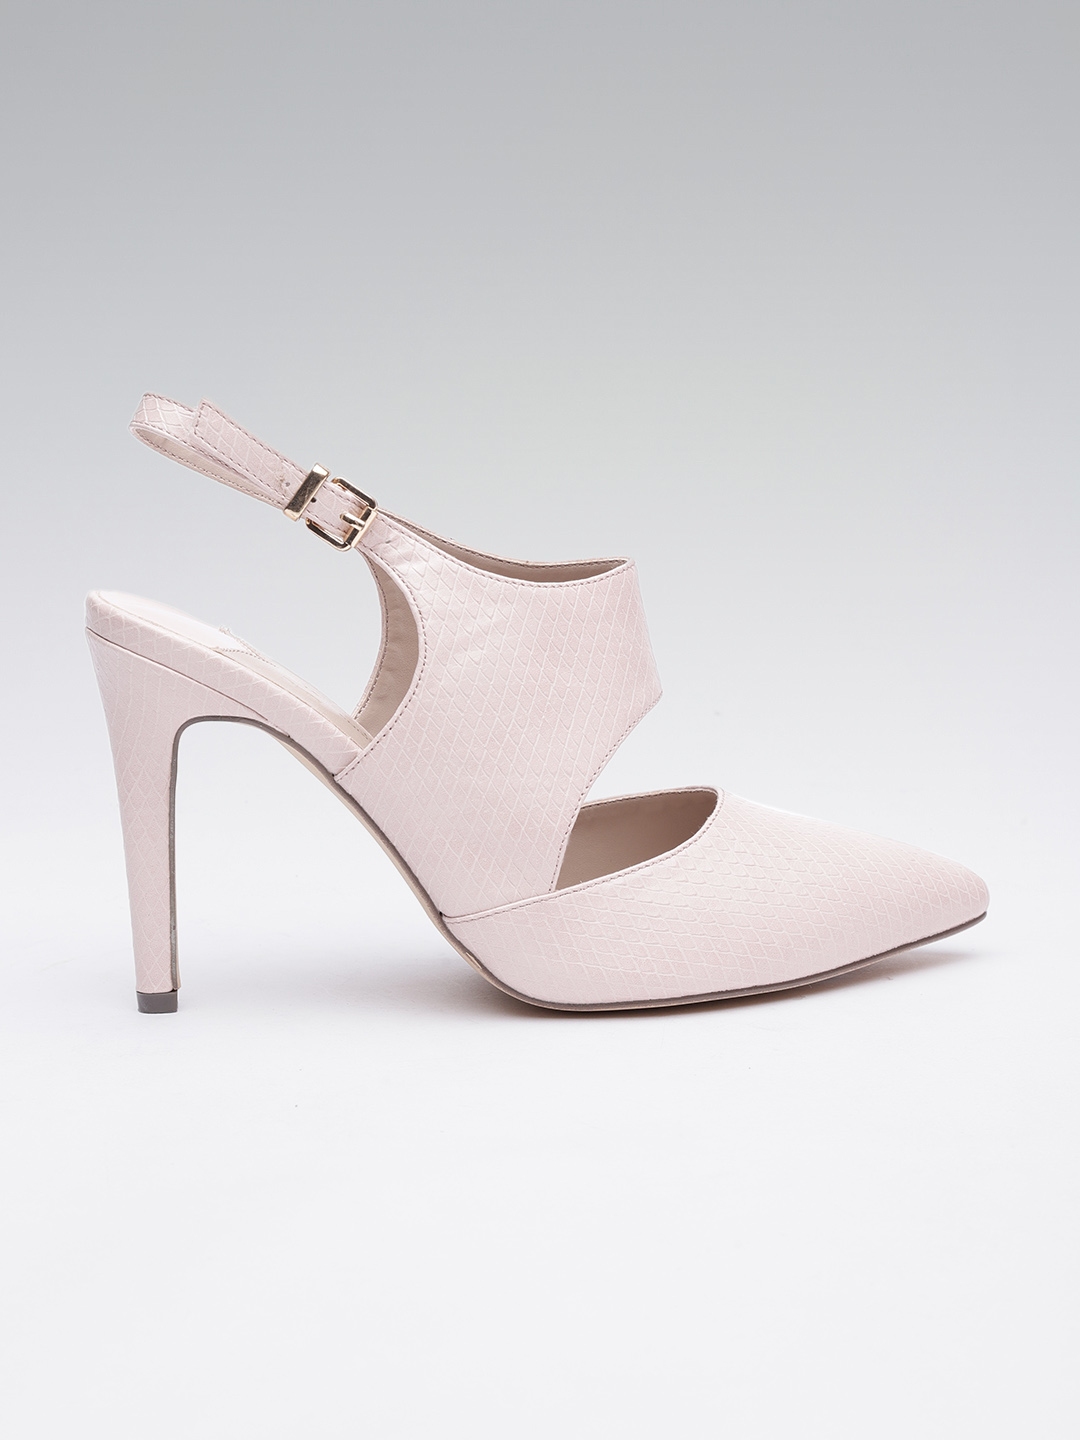 Buy Dorothy Perkins Women Light Pink Textured Pumps Heels For Women 7258242 Myntra 4893